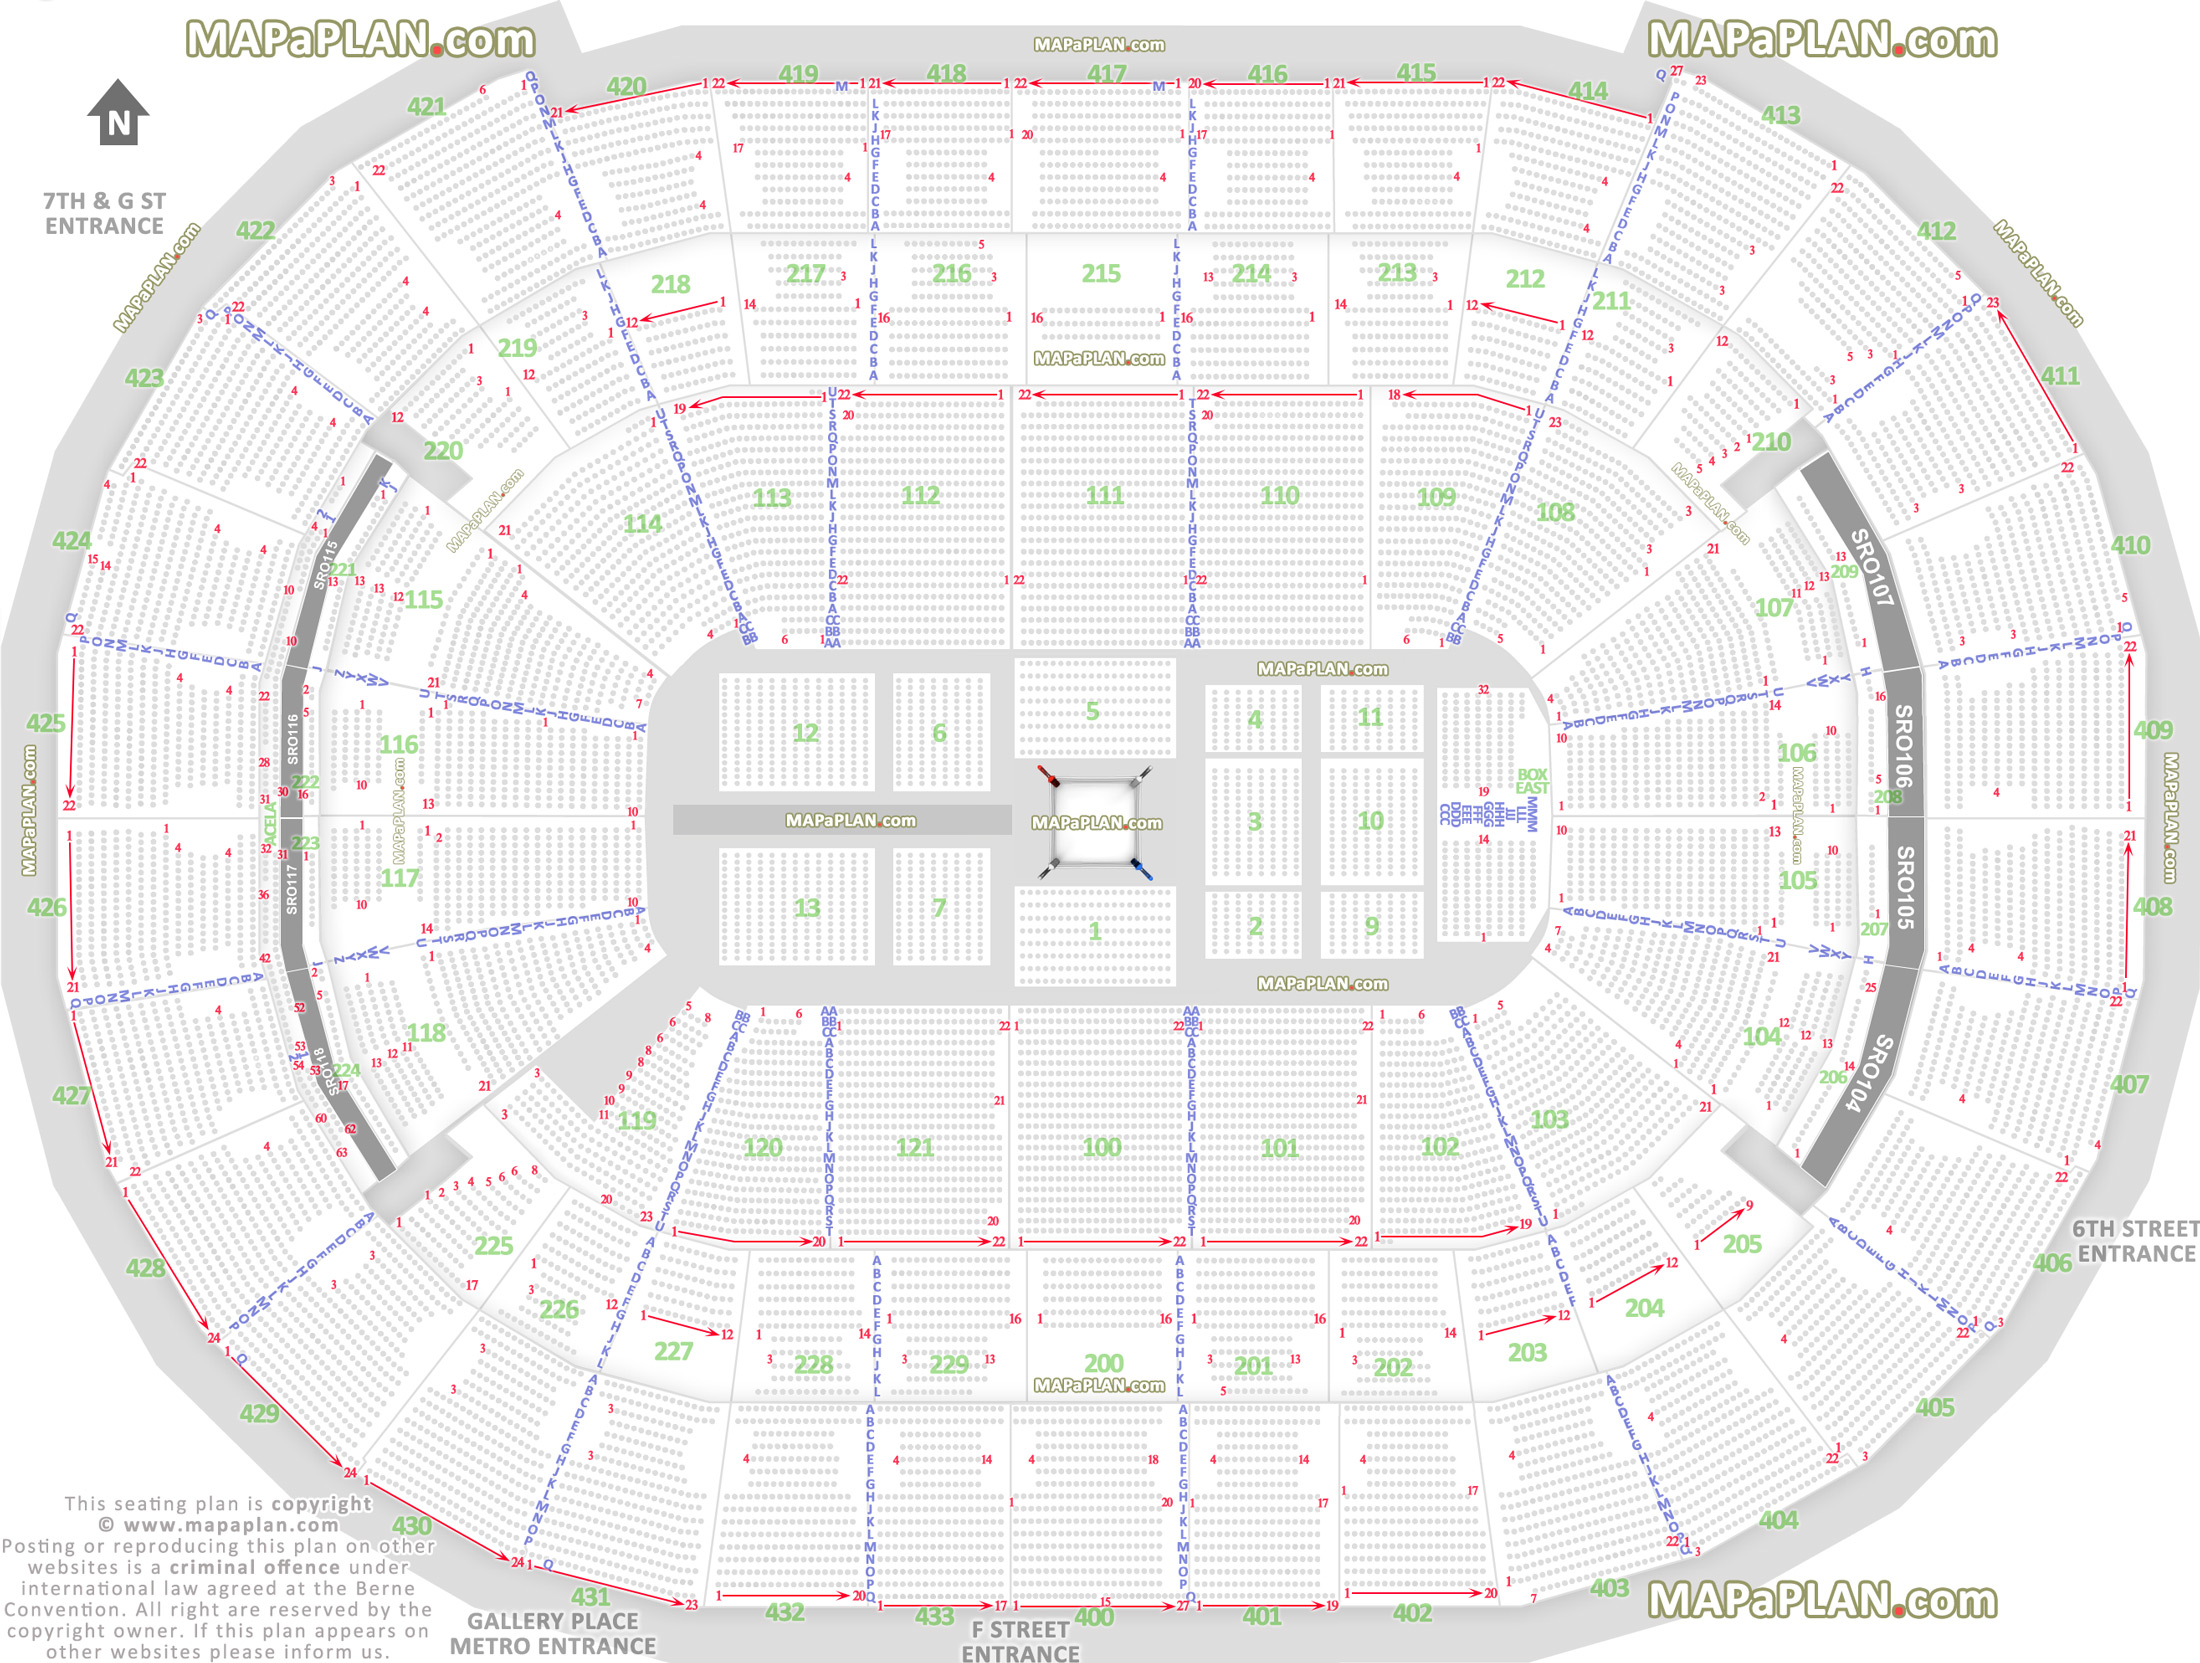 Verizon Wireless Arena Seating Chart